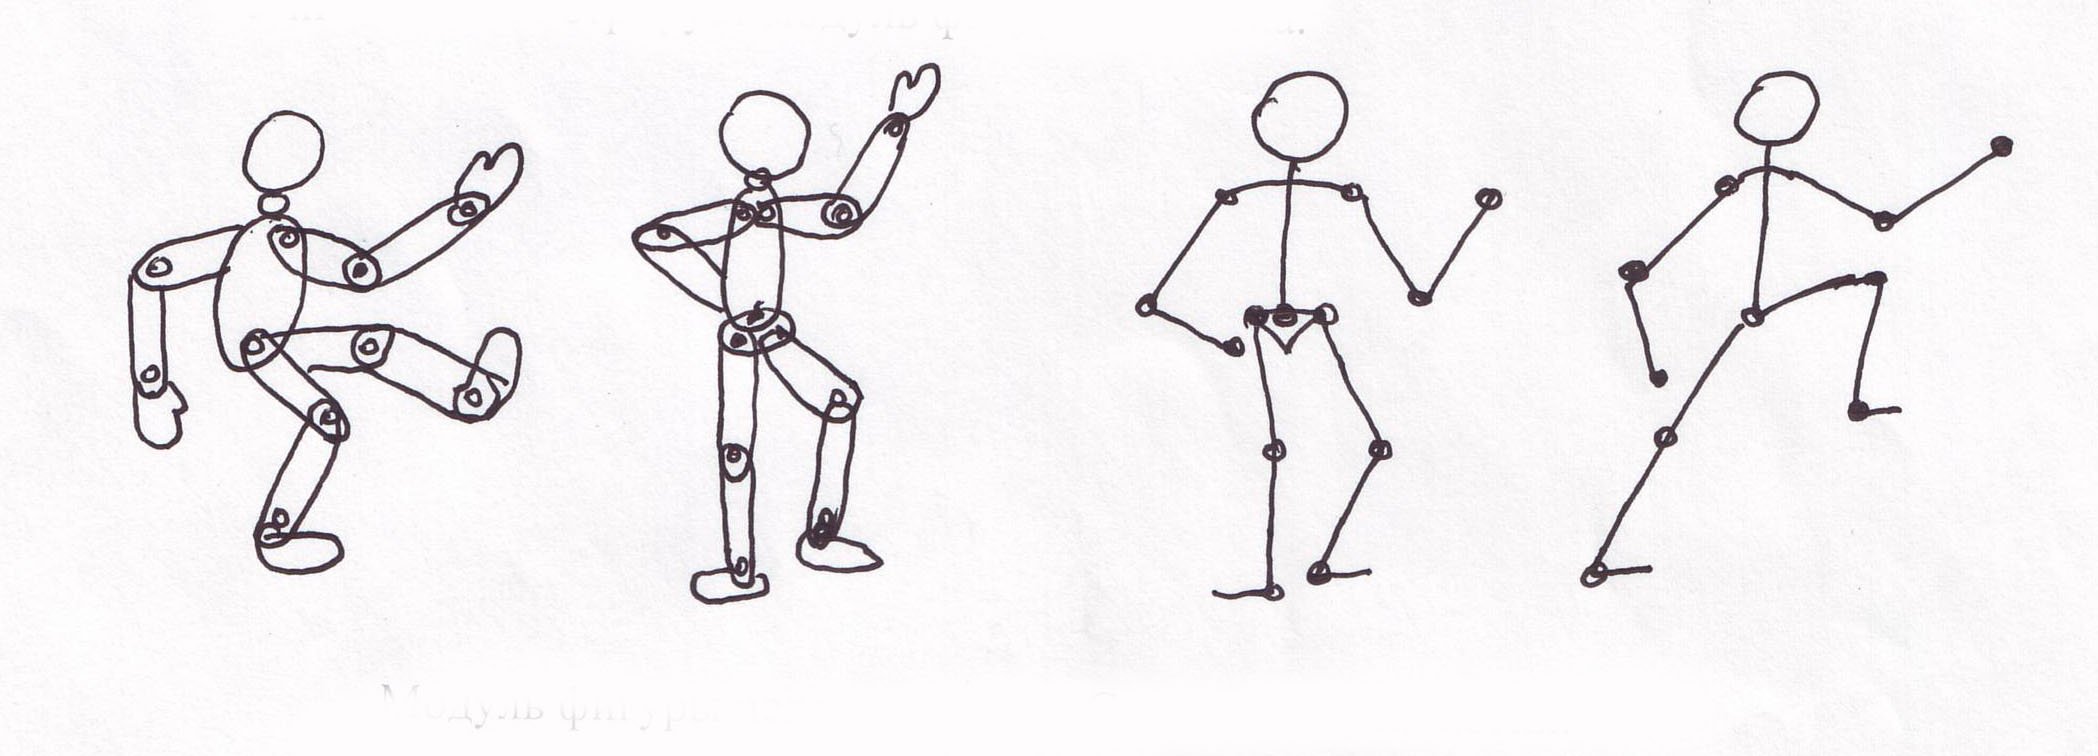 Презентация рисования человека. Рисование человечков в движении. Рисование человека в движении для детей. Схема фигуры человека в движении. Рисование фигуры человека в движении.